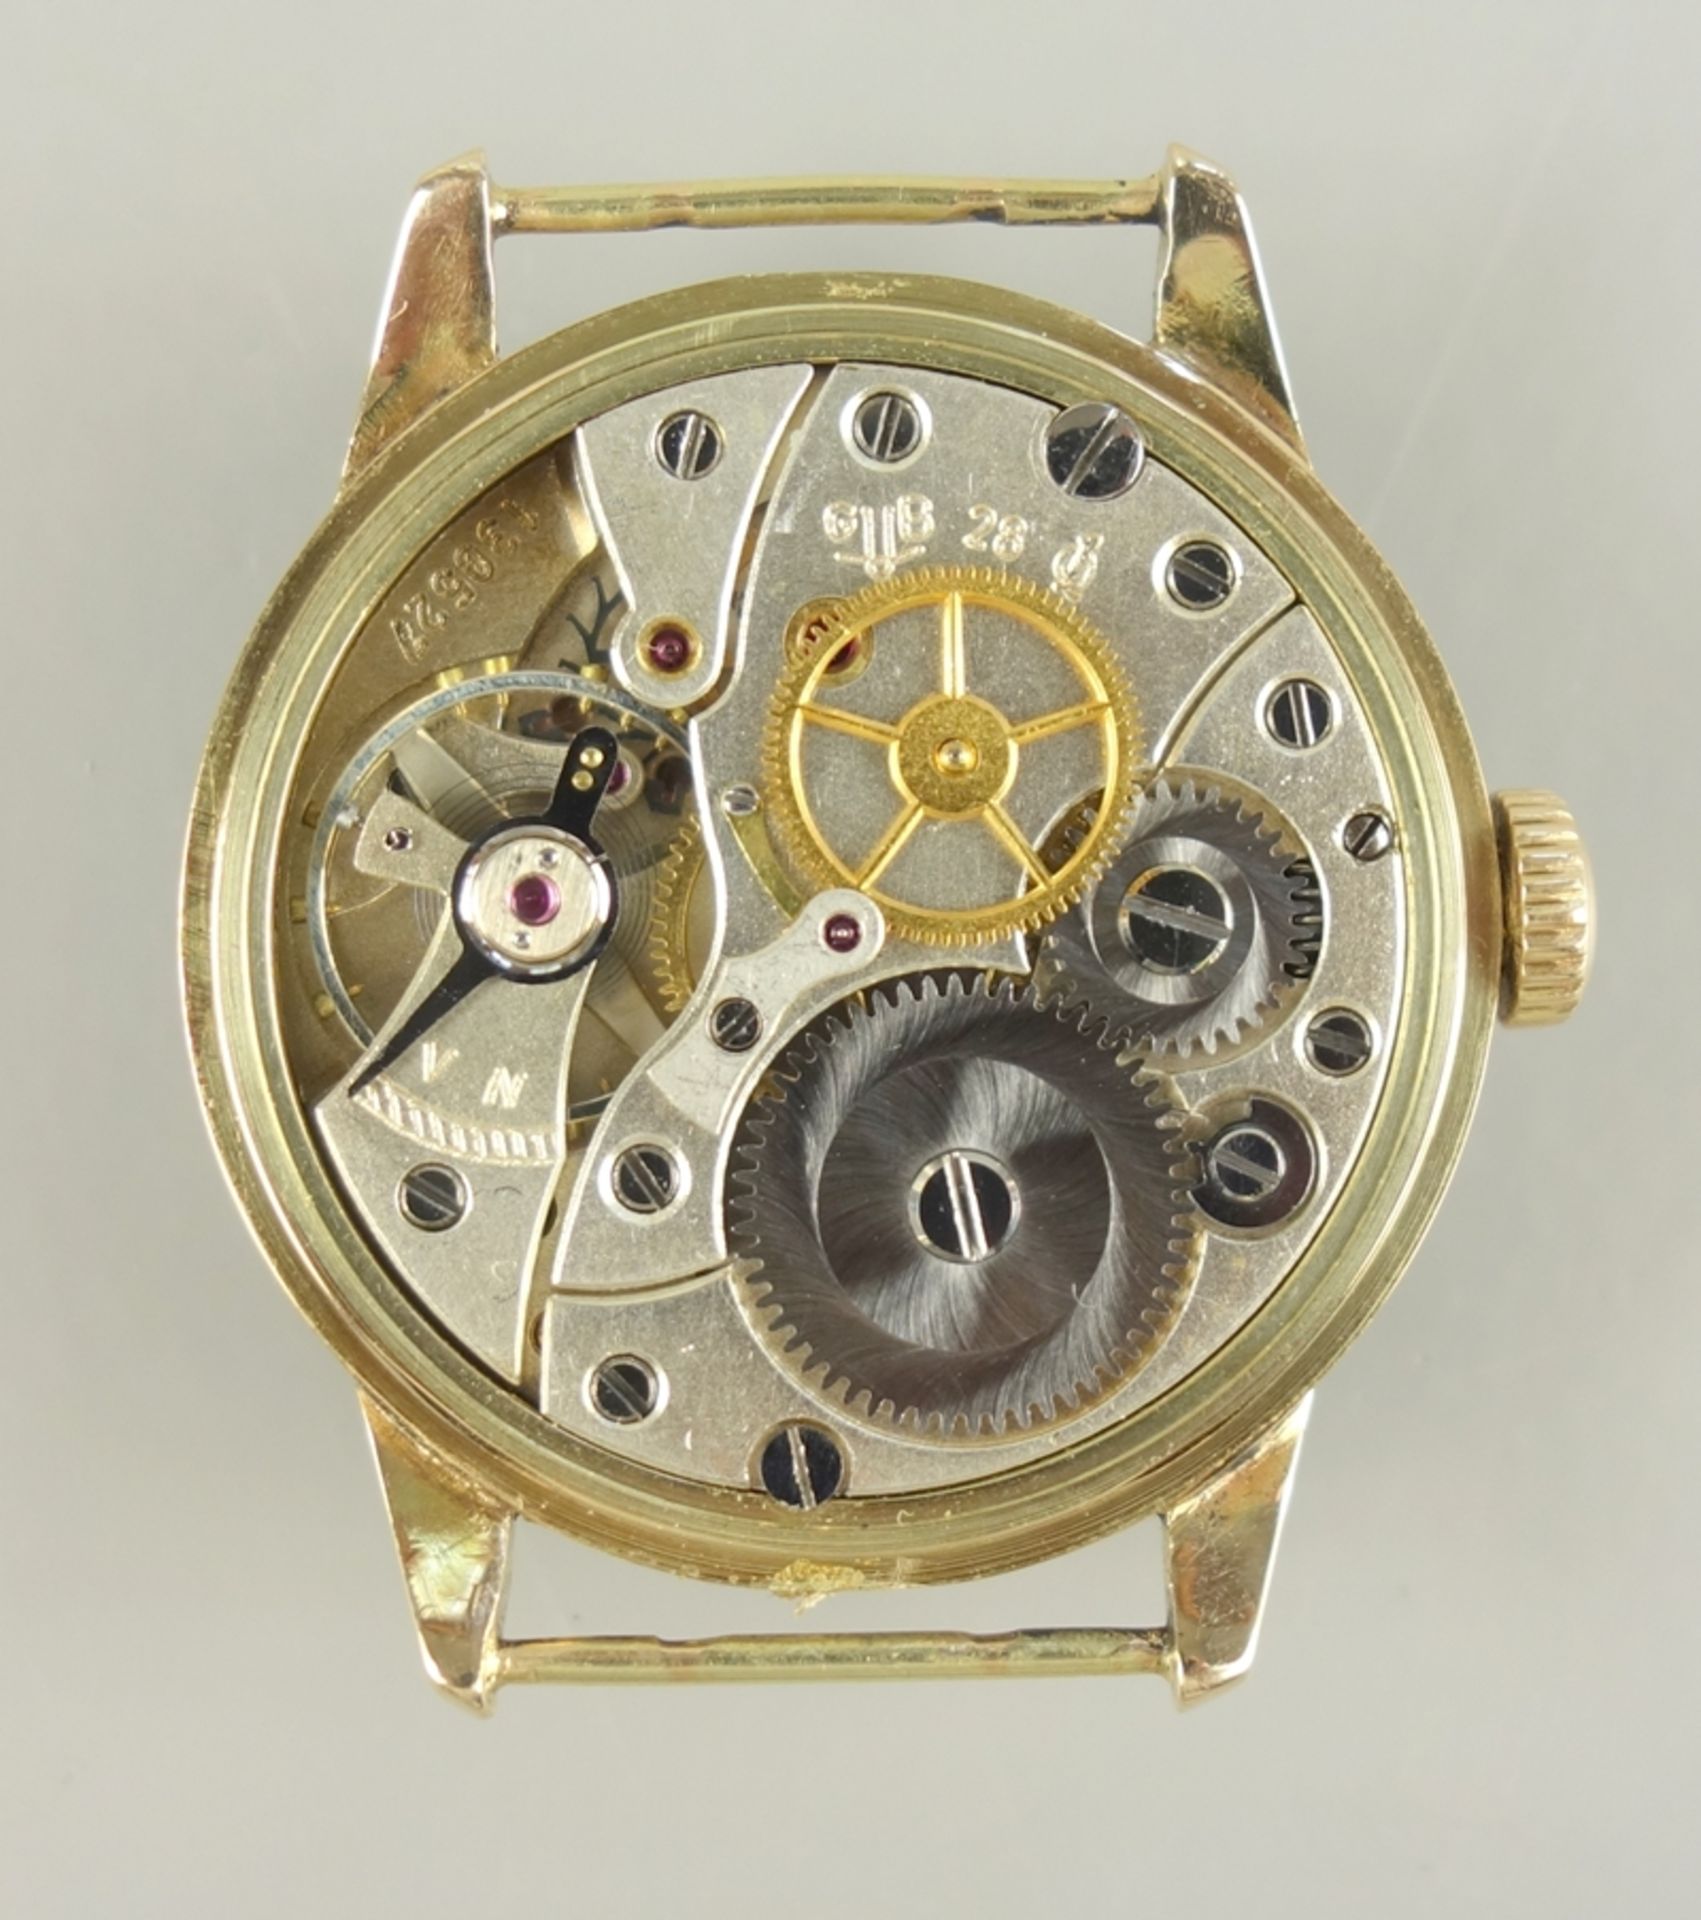 Goldene Armbanduhr, VEB Glashütter Uhrenbetriebe Güteuhr Kal. 28.1, um 1955 - Bild 2 aus 5